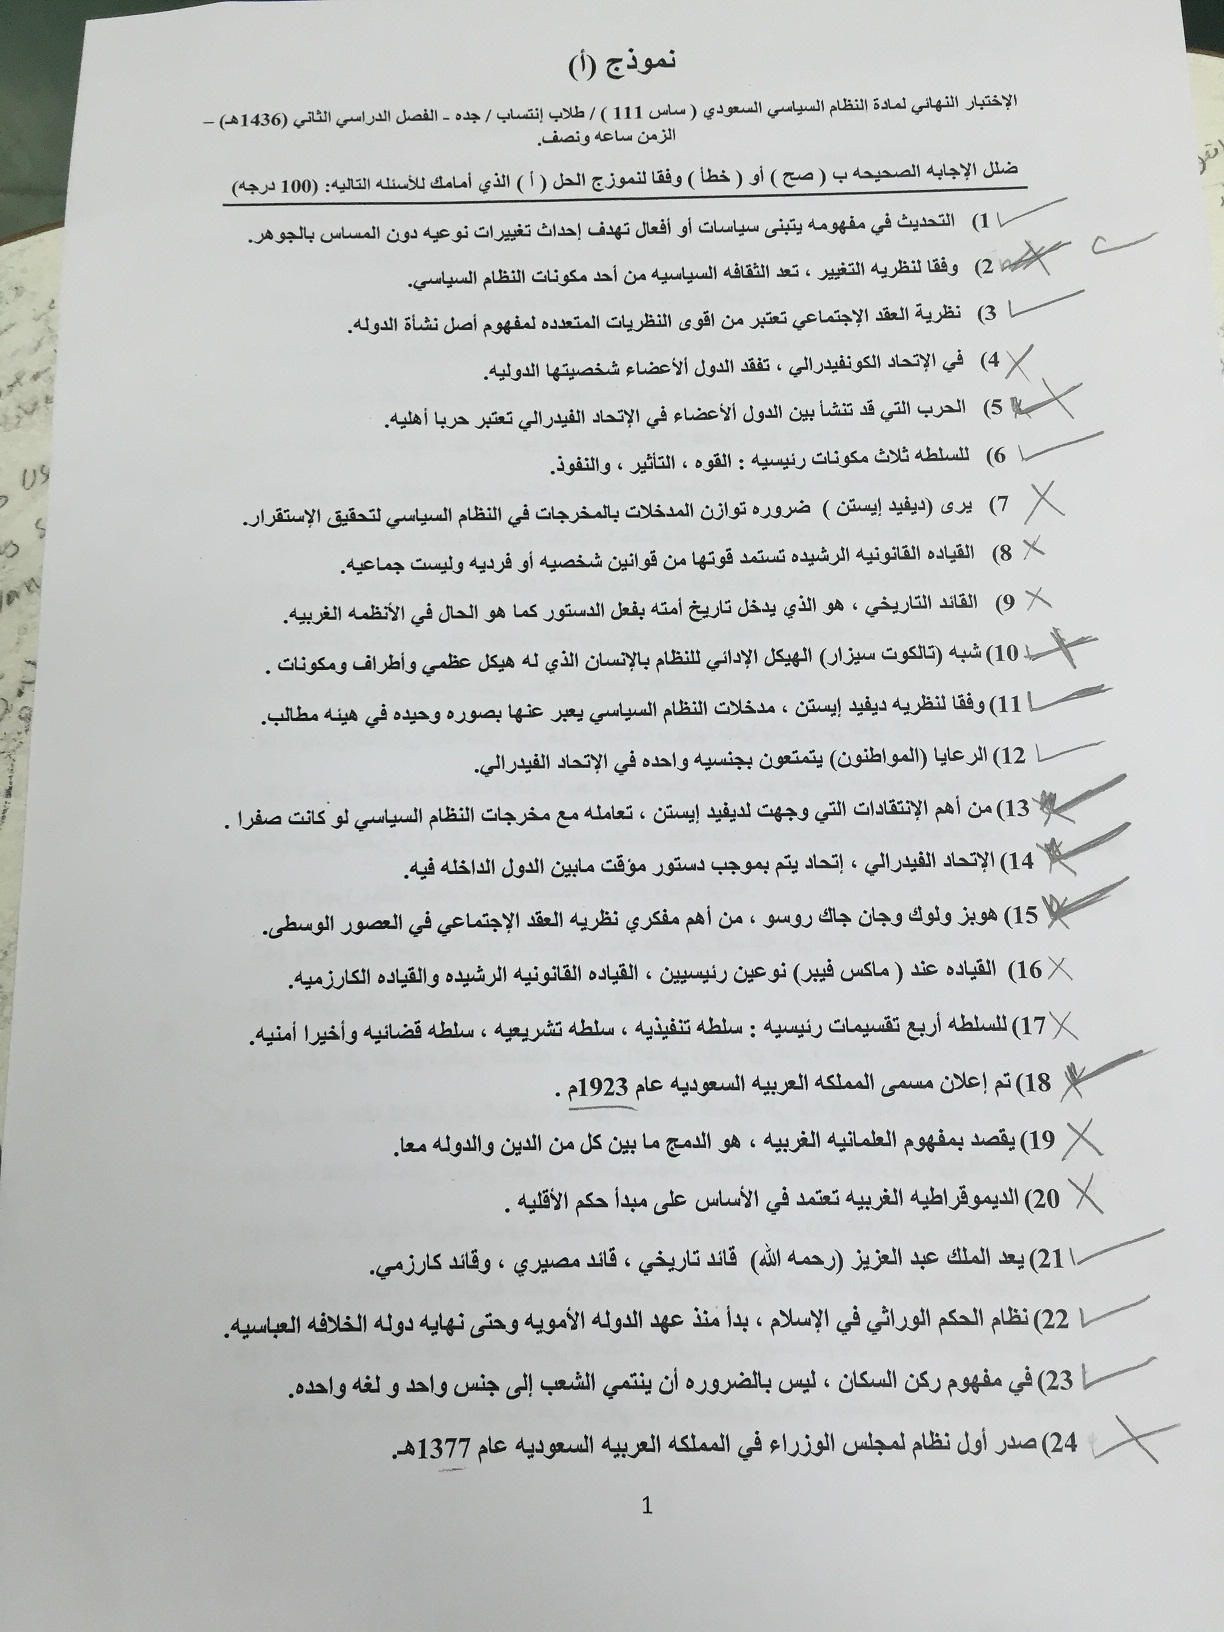 اسئلة اختبار النظام السياسي السعودي ps 111 انتساب الفصل الثاني 1436هـ نموذج (أ)